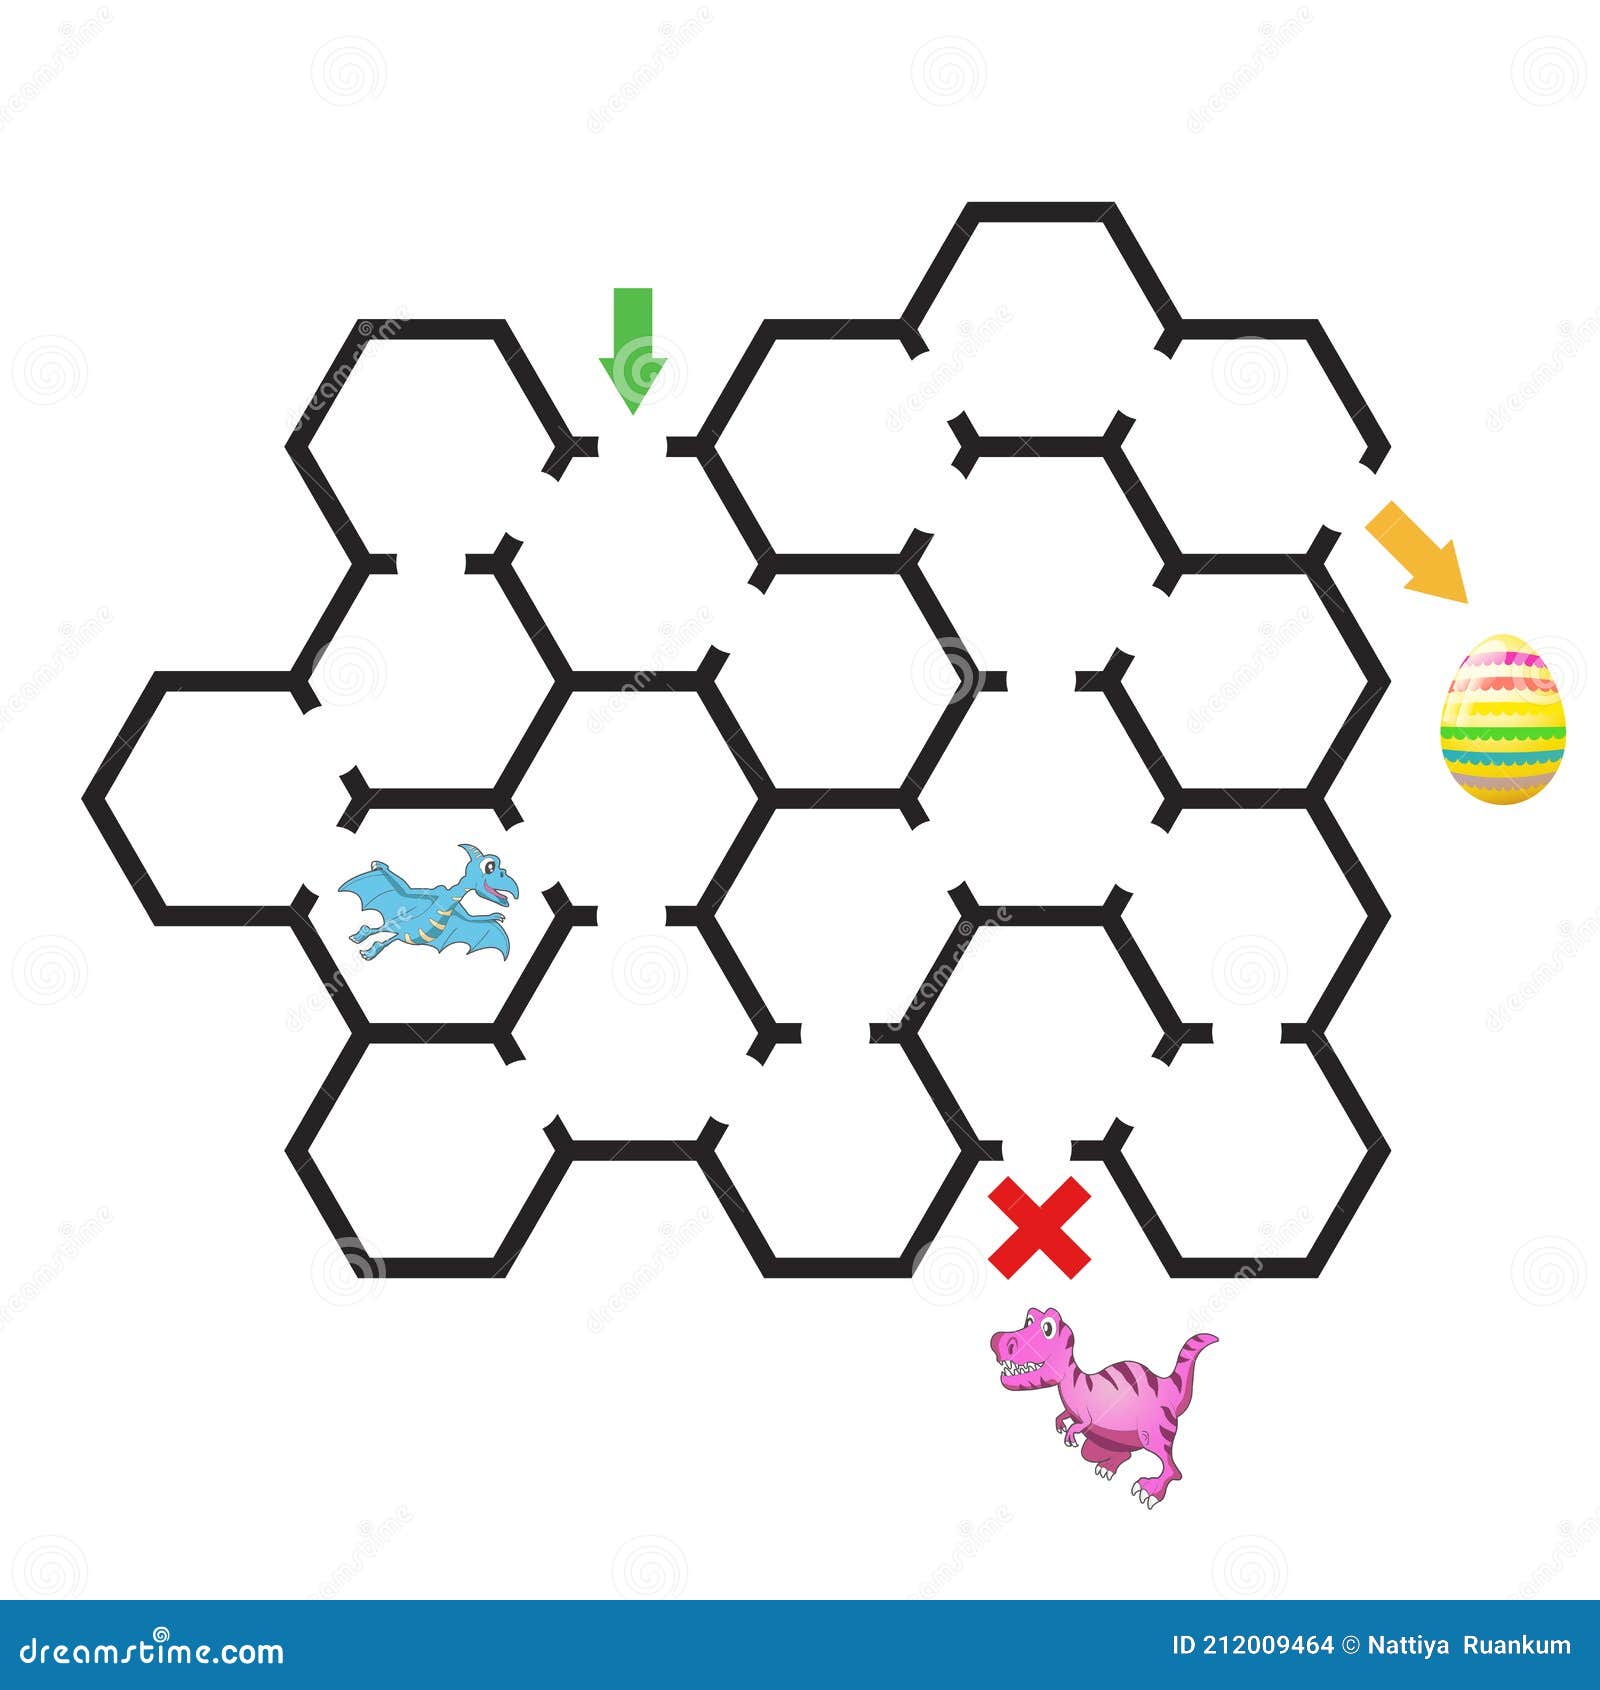 printable-mazes-for-kids-maze-games-worksheet-for-children-worksheet